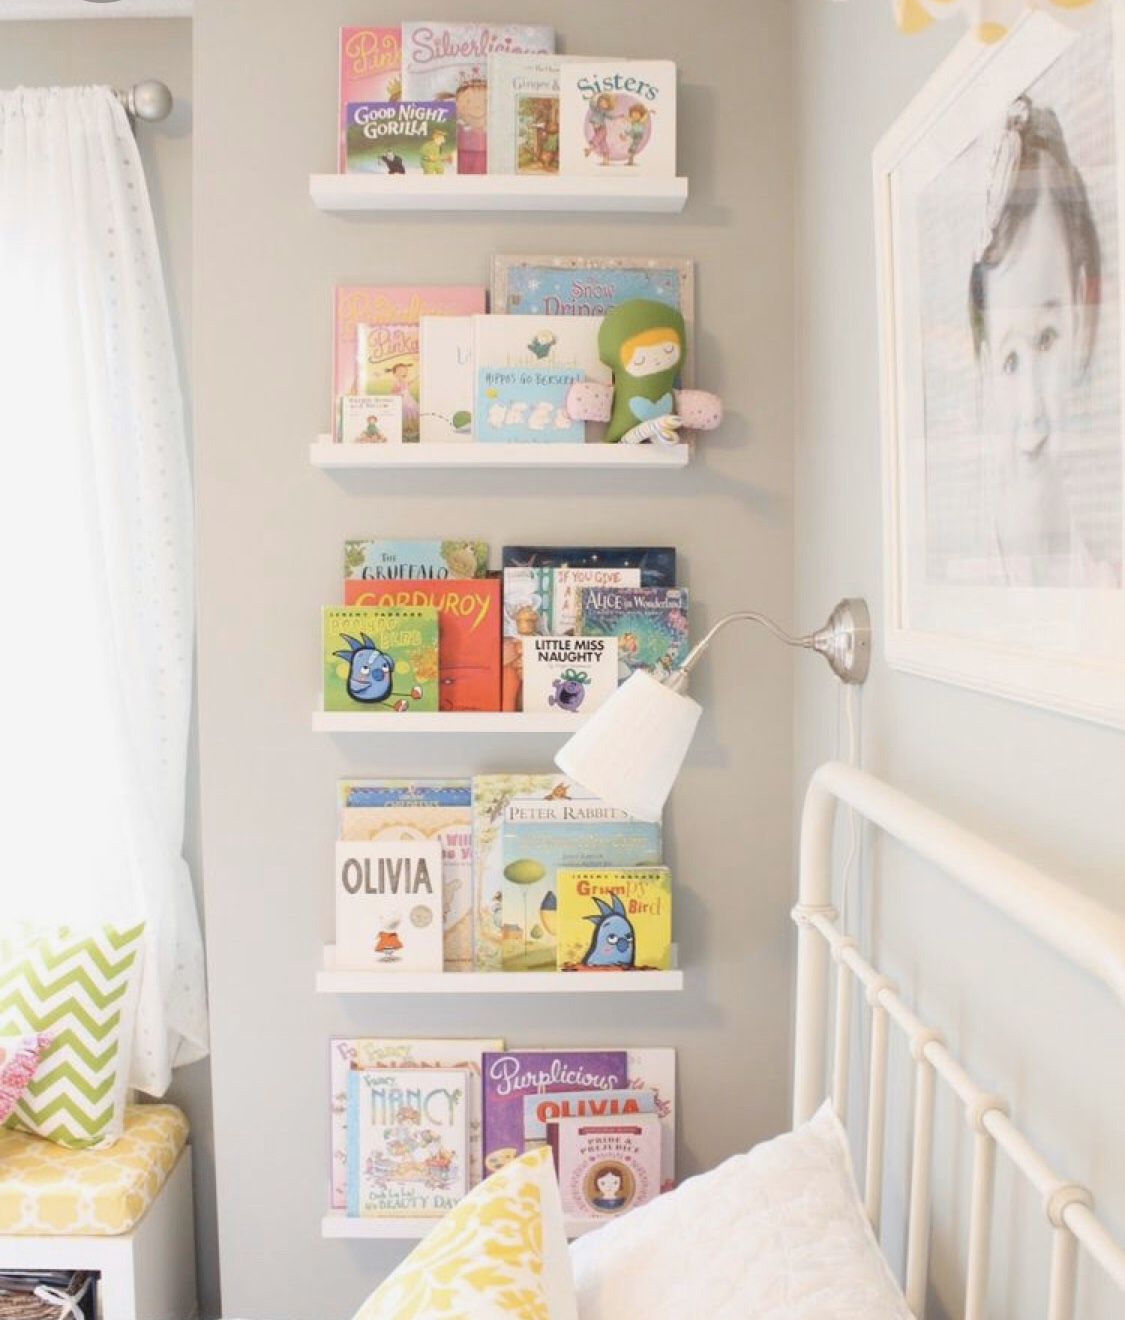 IKEA picture ledges/bookshelves